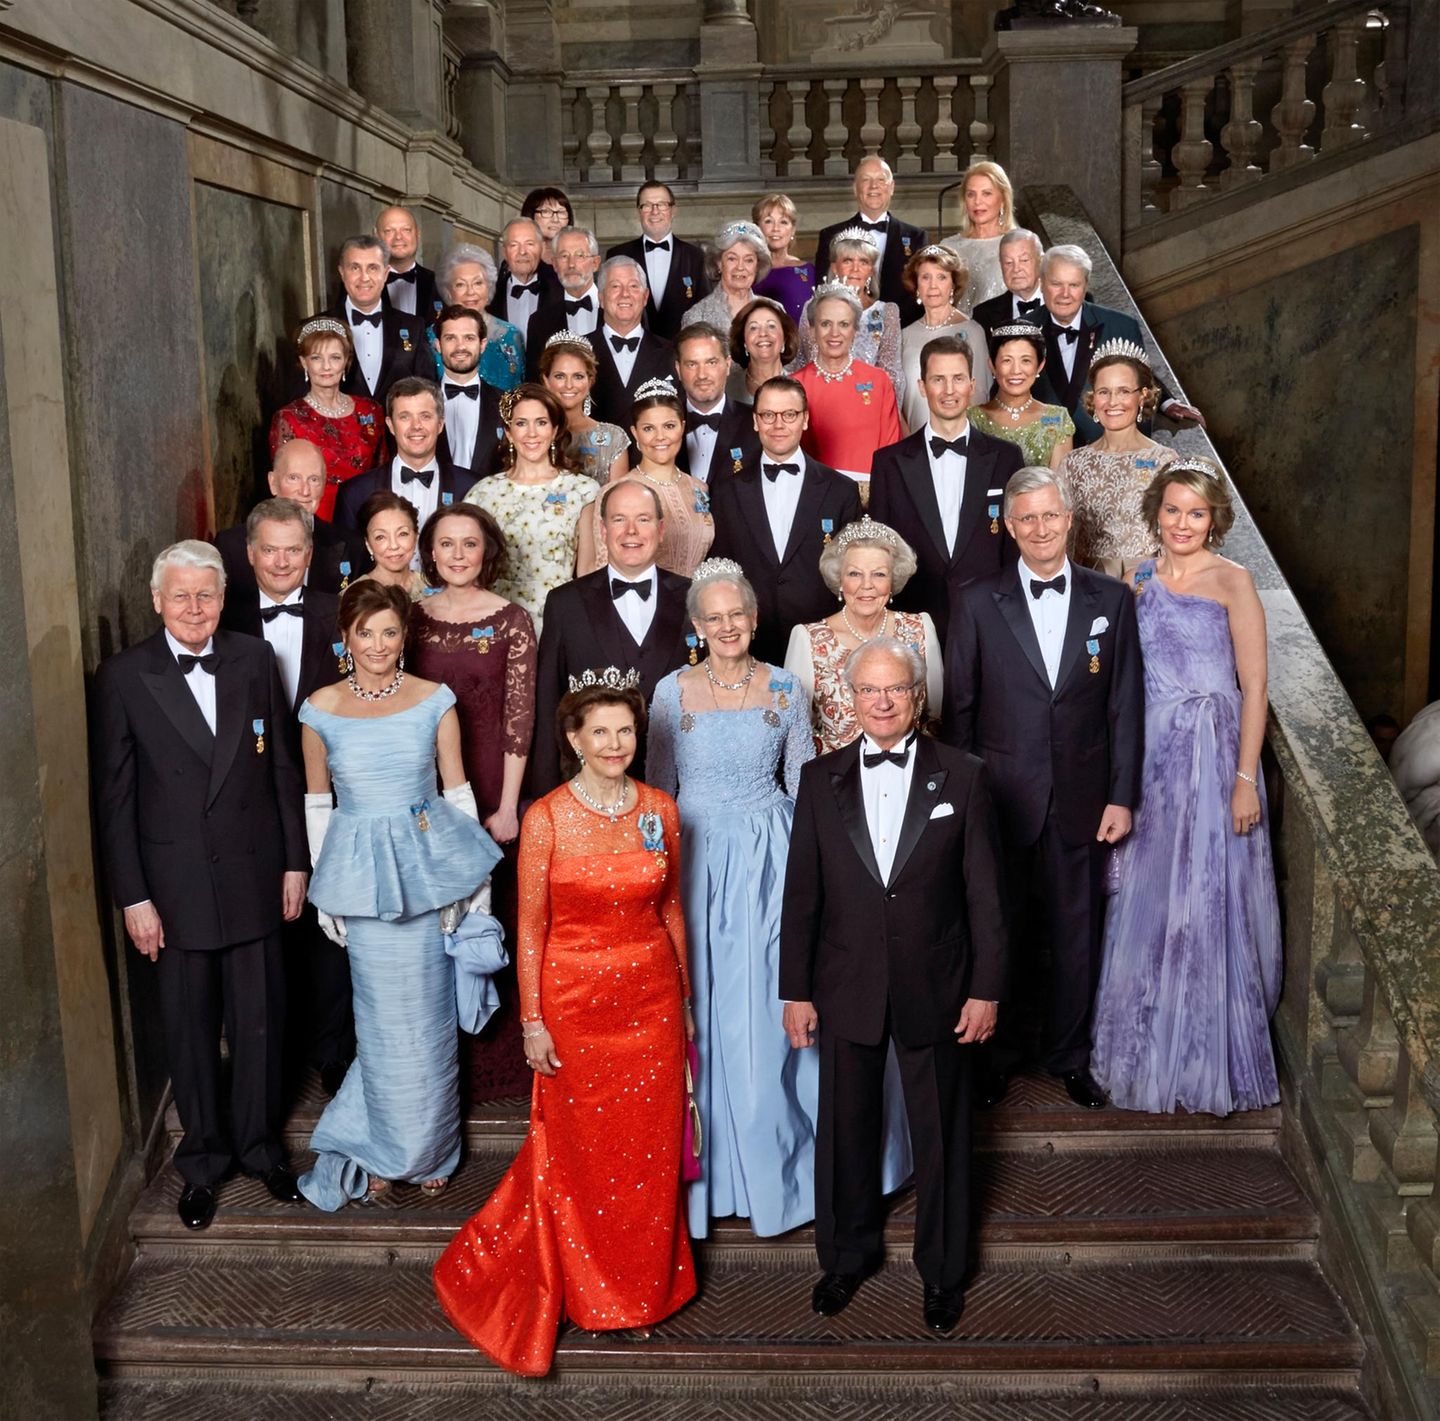 30. April 2016: Bankett  Das war ein Fest: Für ein Gruppenbild kommt die Geburstagsgesellschaft um König Carl Gustaf auf der Treppe des Königlichen Schloss gerne zusammen.